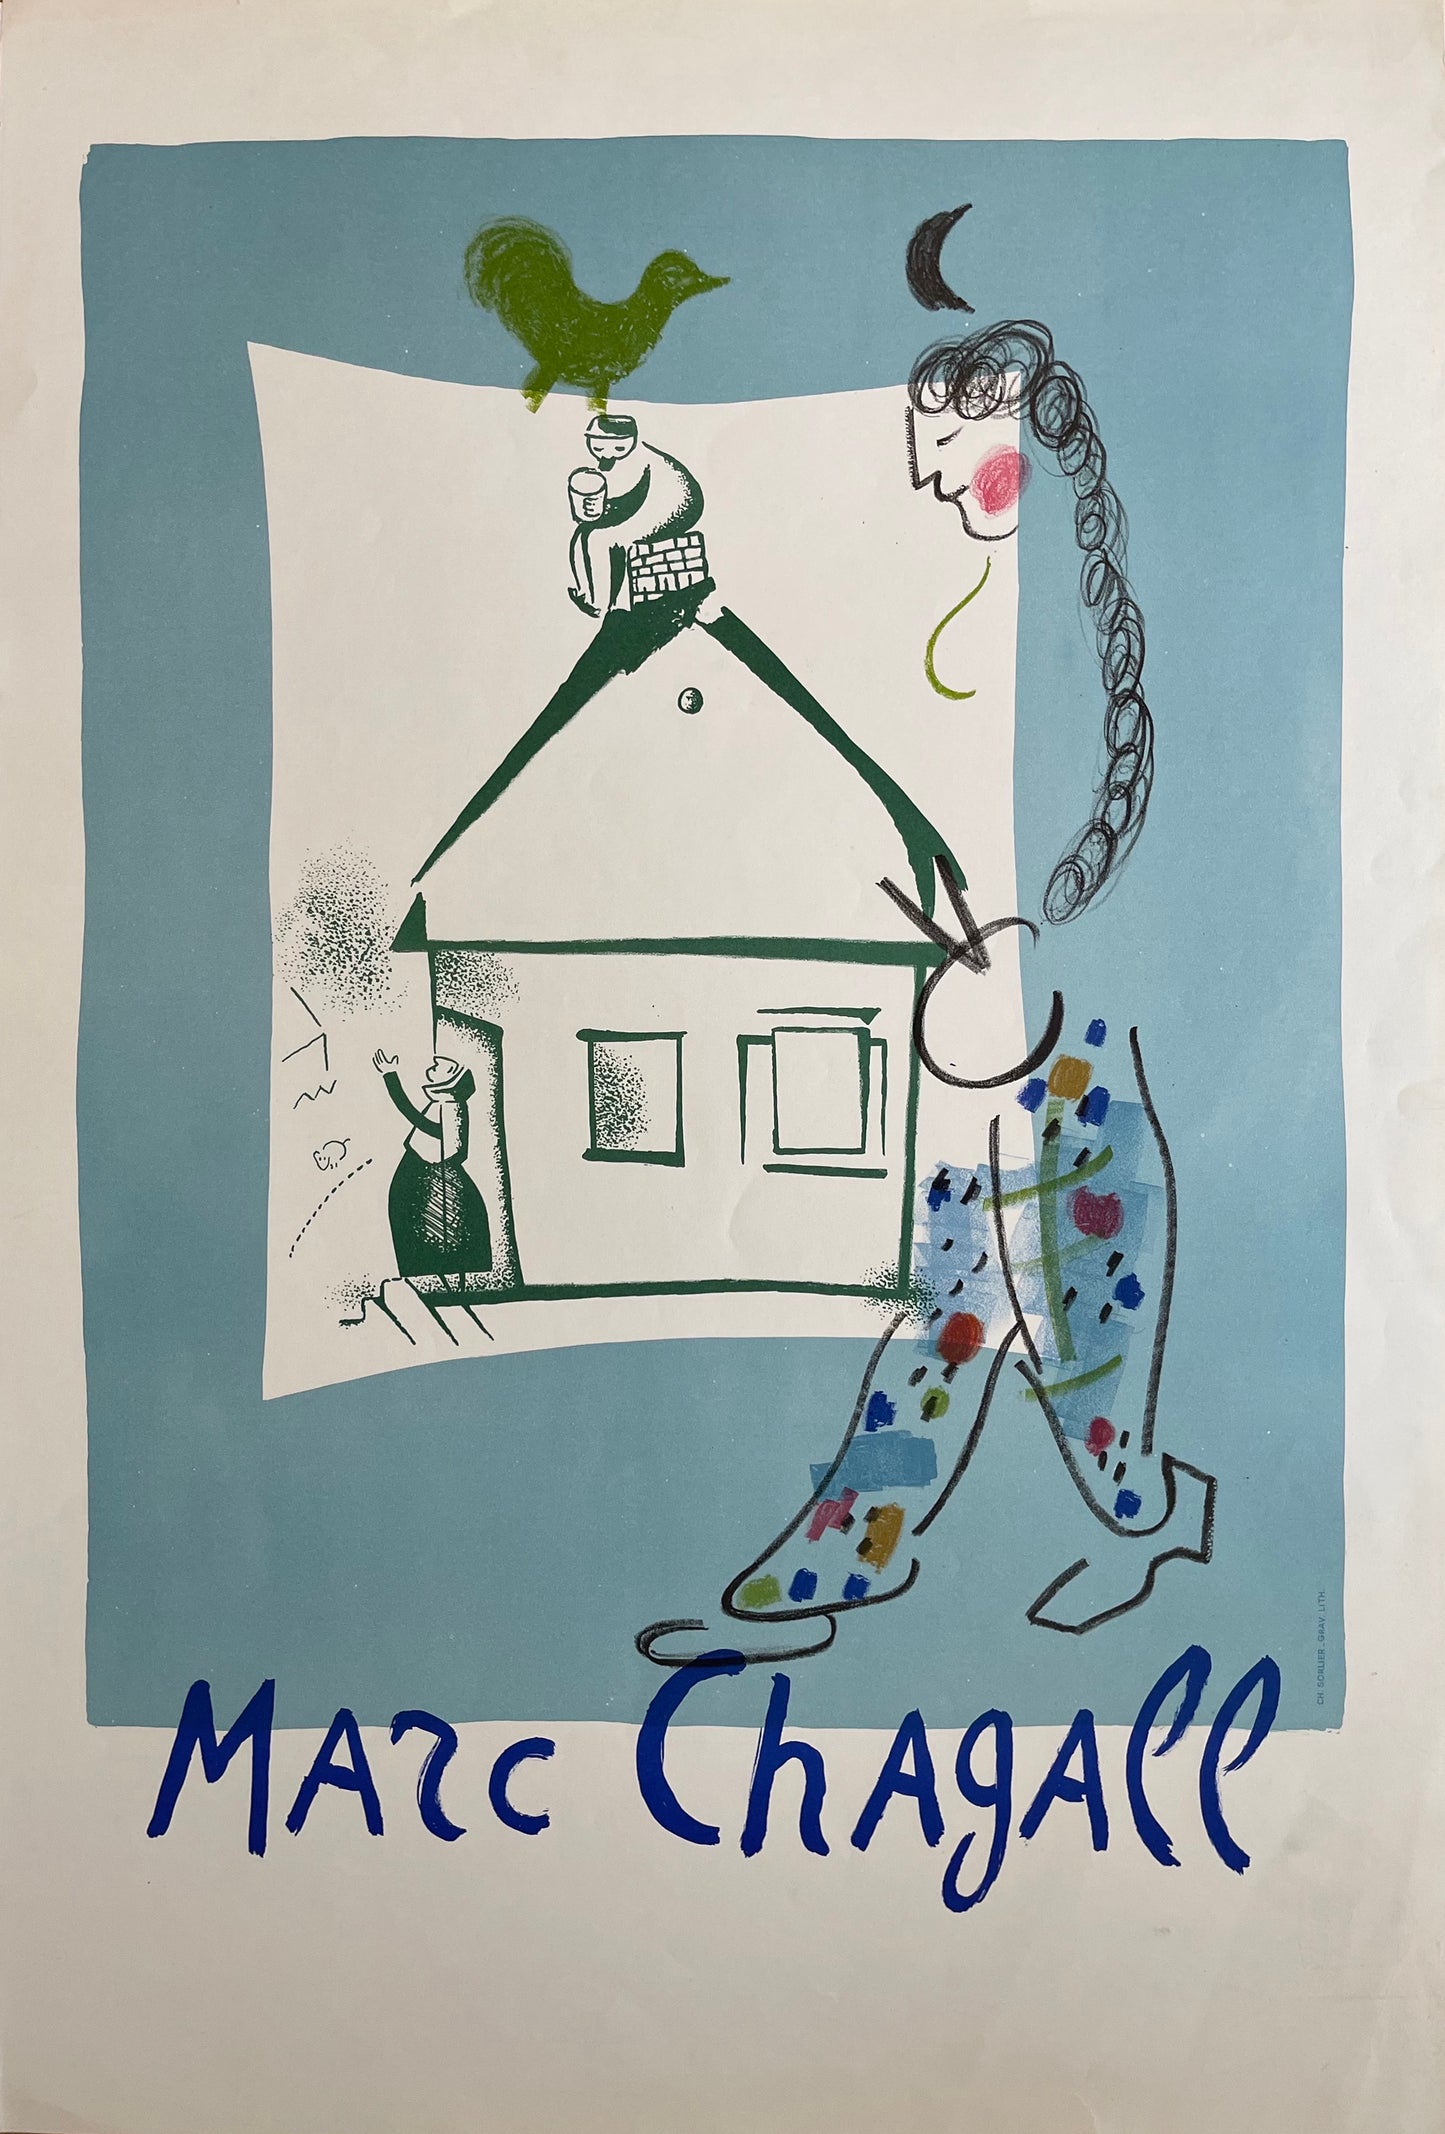 Marc Chagall Lithograph: "The House in My Village" (La Maison de mon Village), 1969